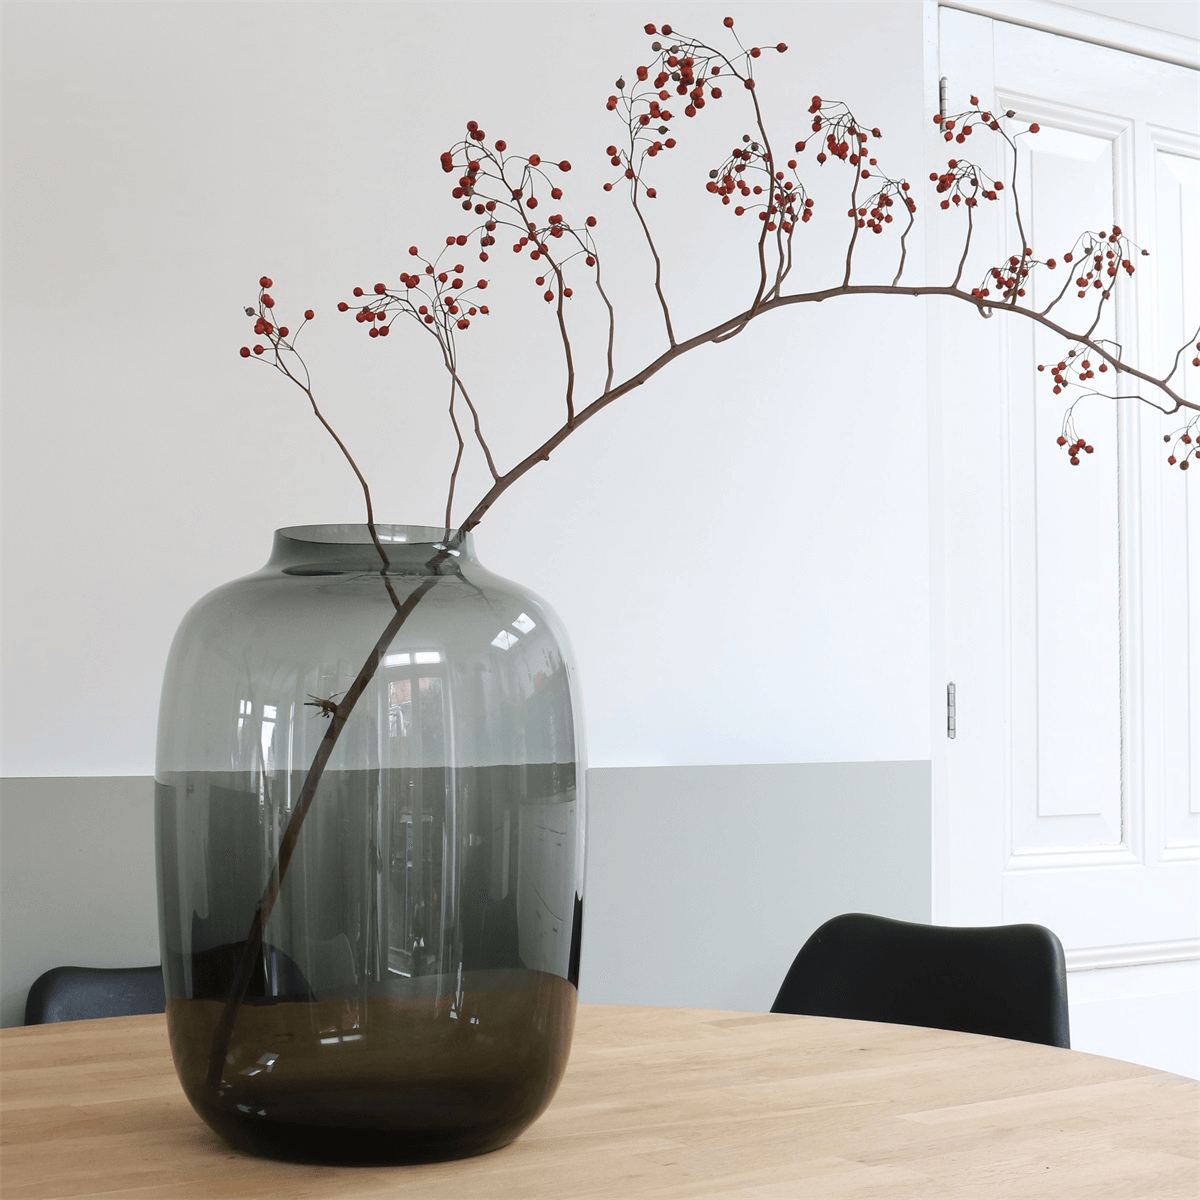 Designer Kara Grau Deko Vase Blumenvase Bodenvase Handarbeit - HomeDesign Knaus wir schaffen Inspirationen 